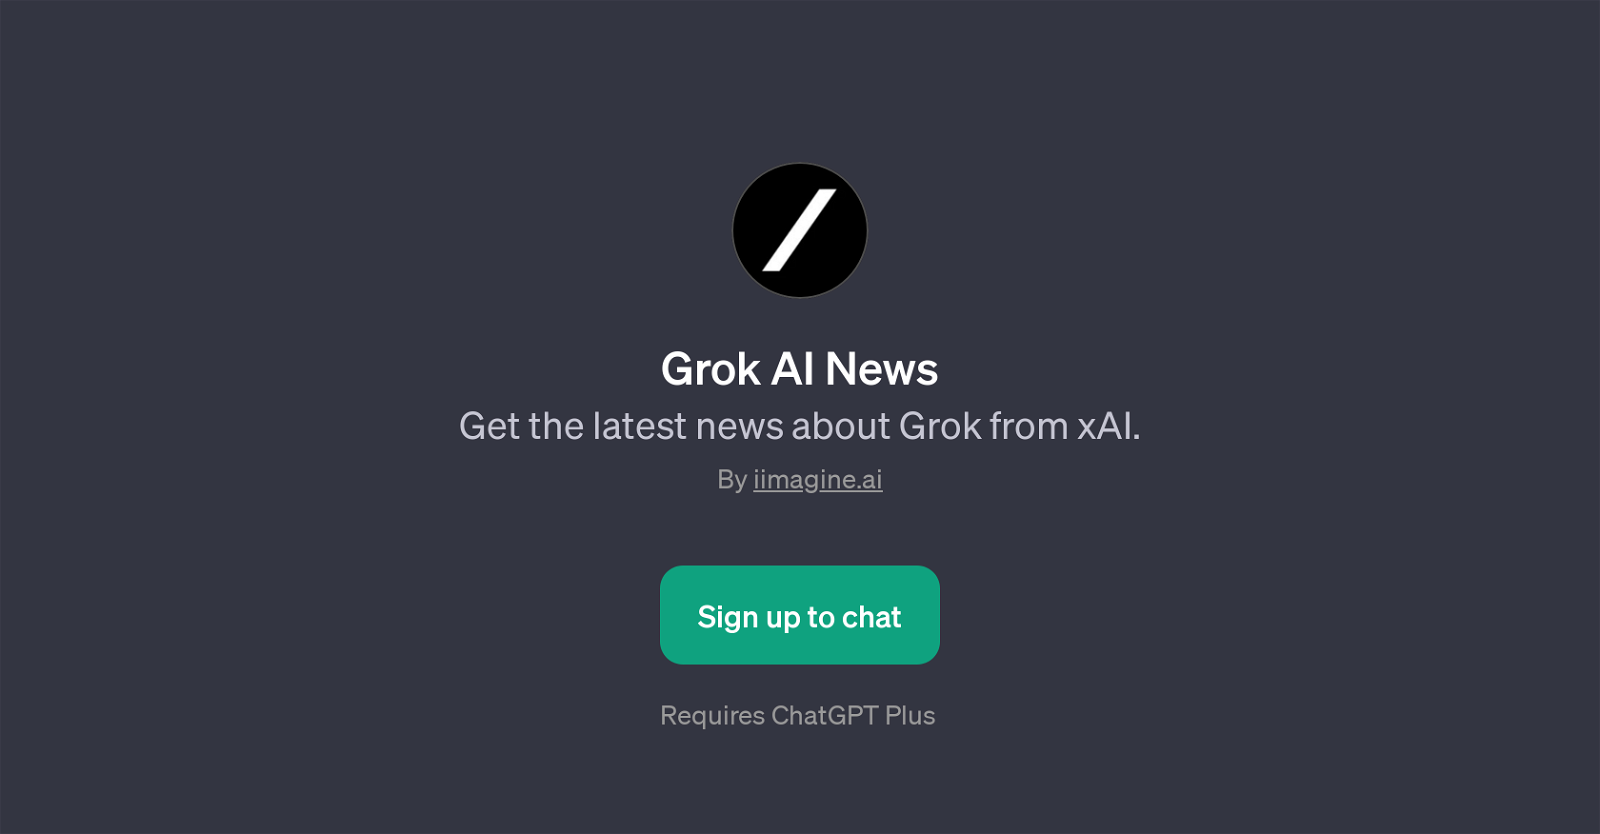 Grok AI News website